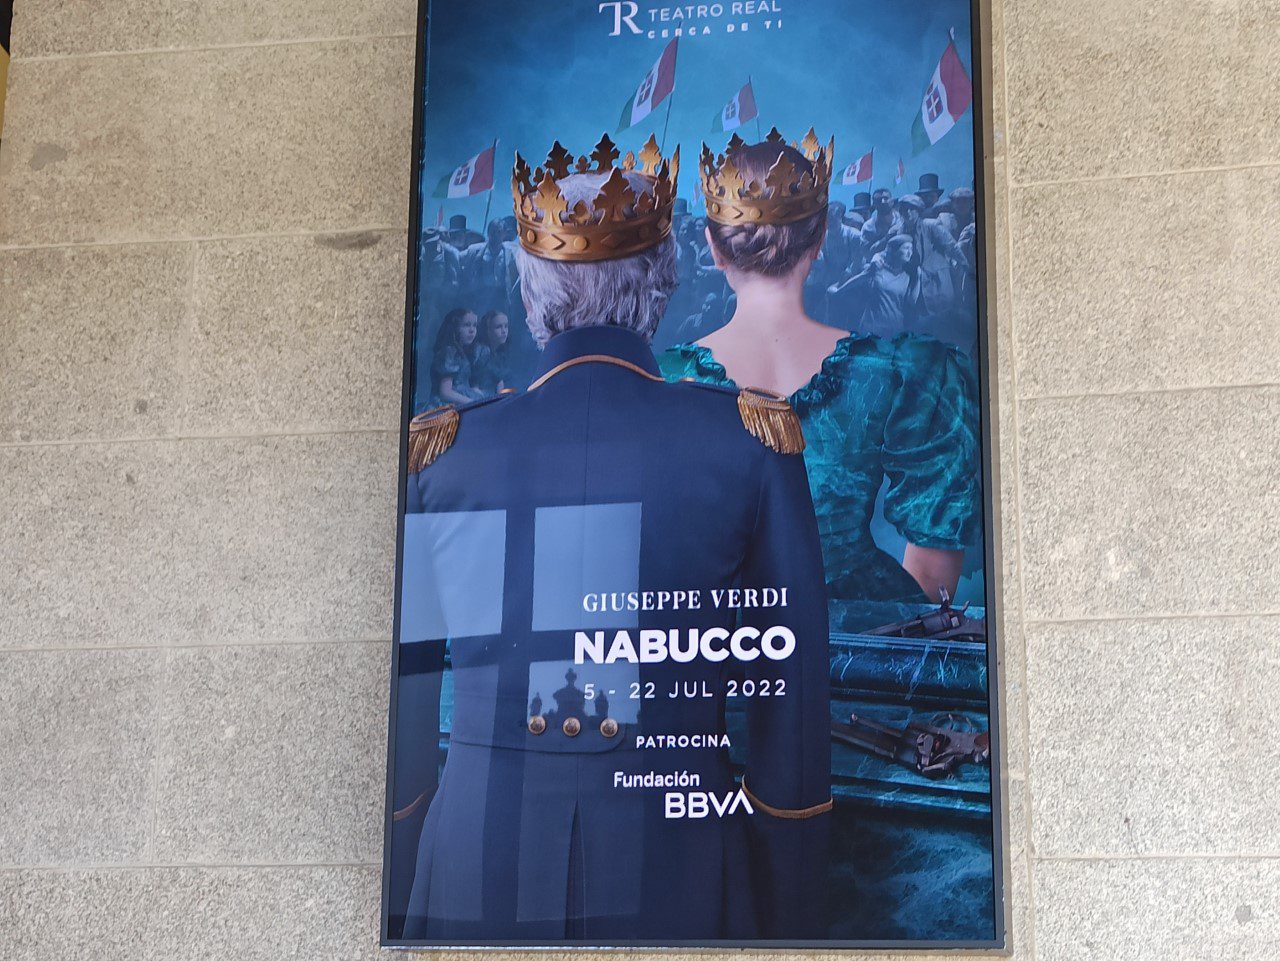 Nabucco – Ópera en el Teatro Real